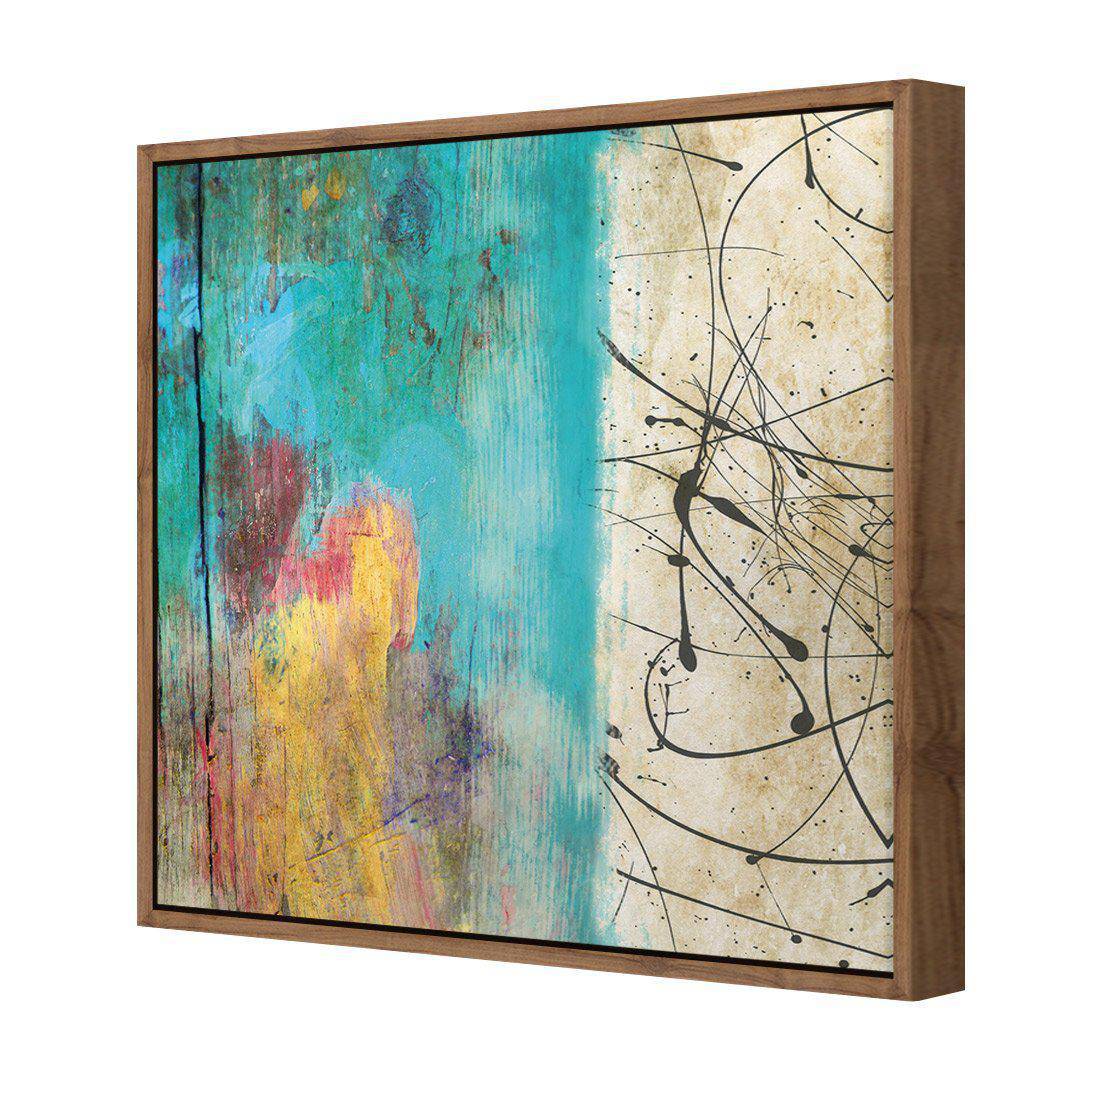 Painted Grunge Splatter Canvas Art-Canvas-Wall Art Designs-30x30cm-Canvas - Natural Frame-Wall Art Designs